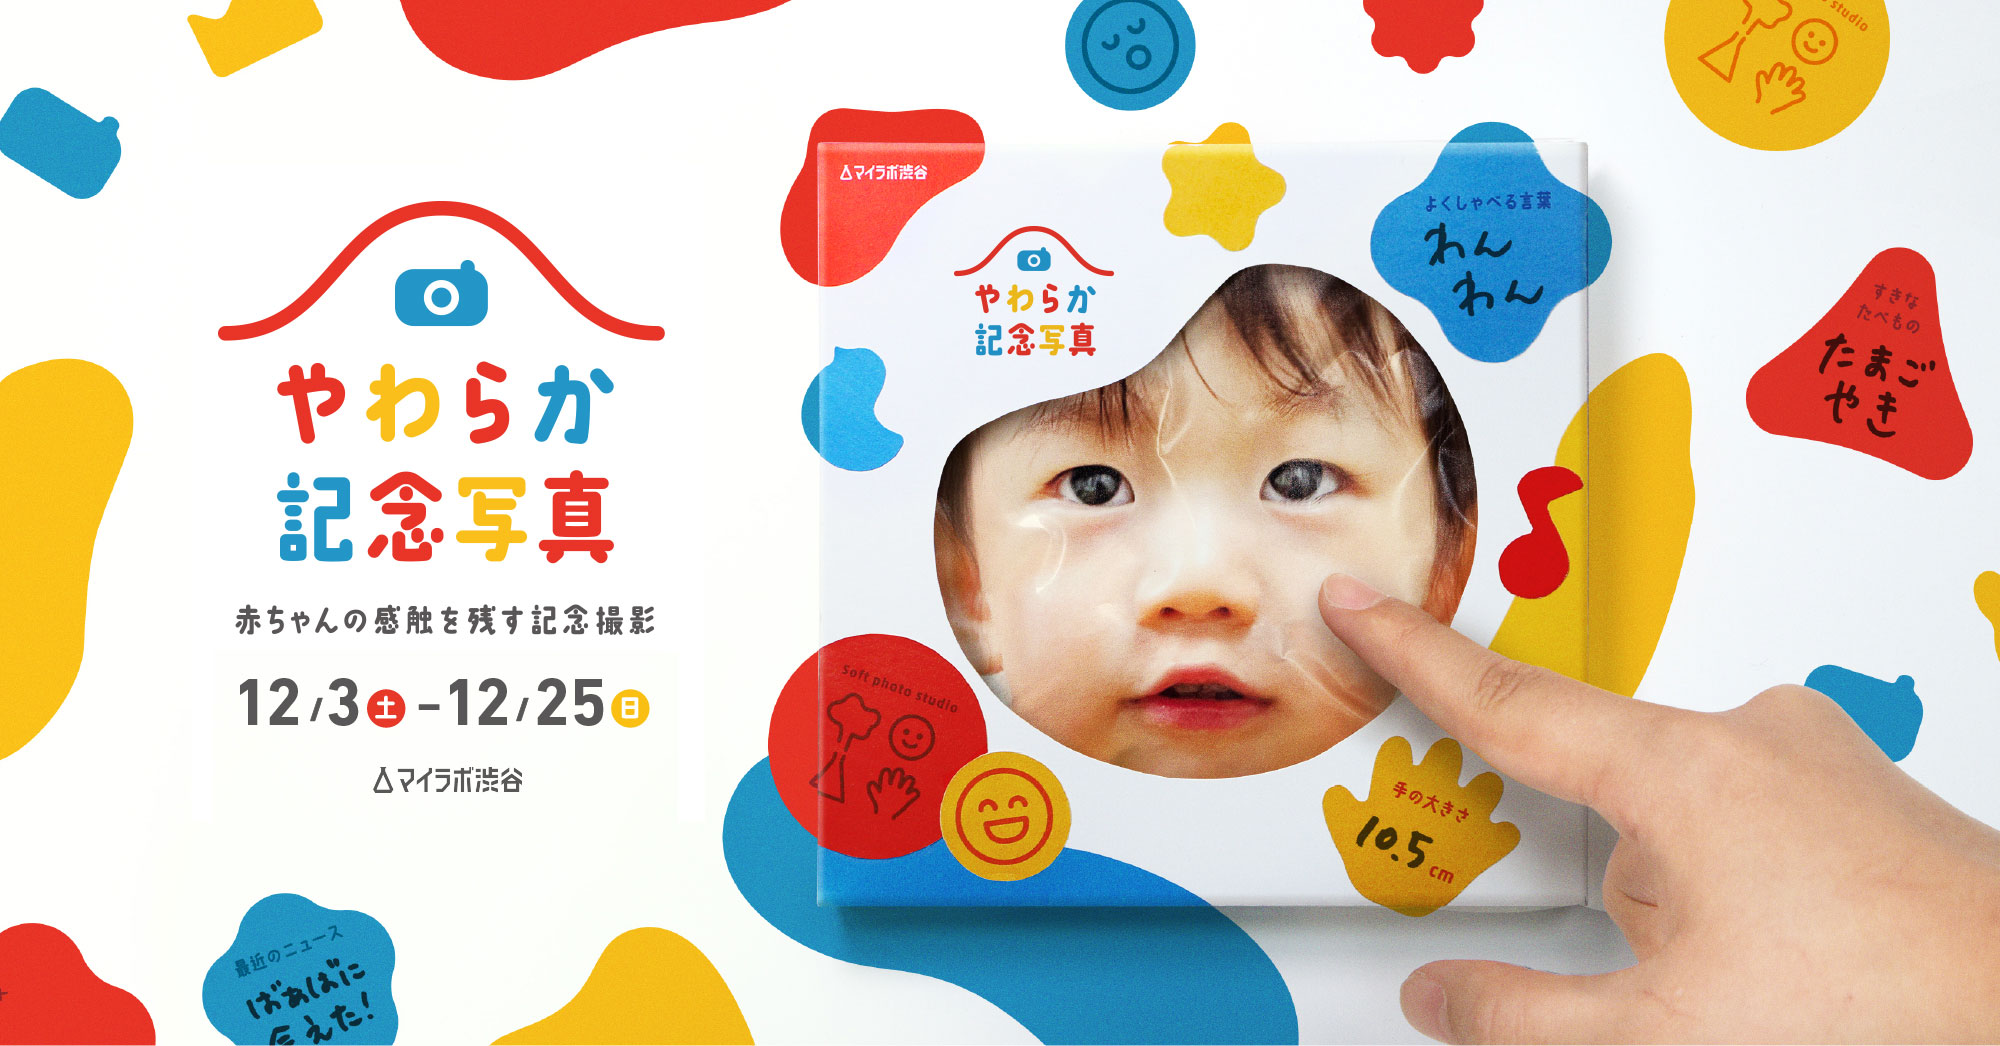 マイラボ渋谷 第3回イベント やわらか記念写真 赤ちゃんの感触を残す記念撮影 の実施 Mineoユーザーサポート